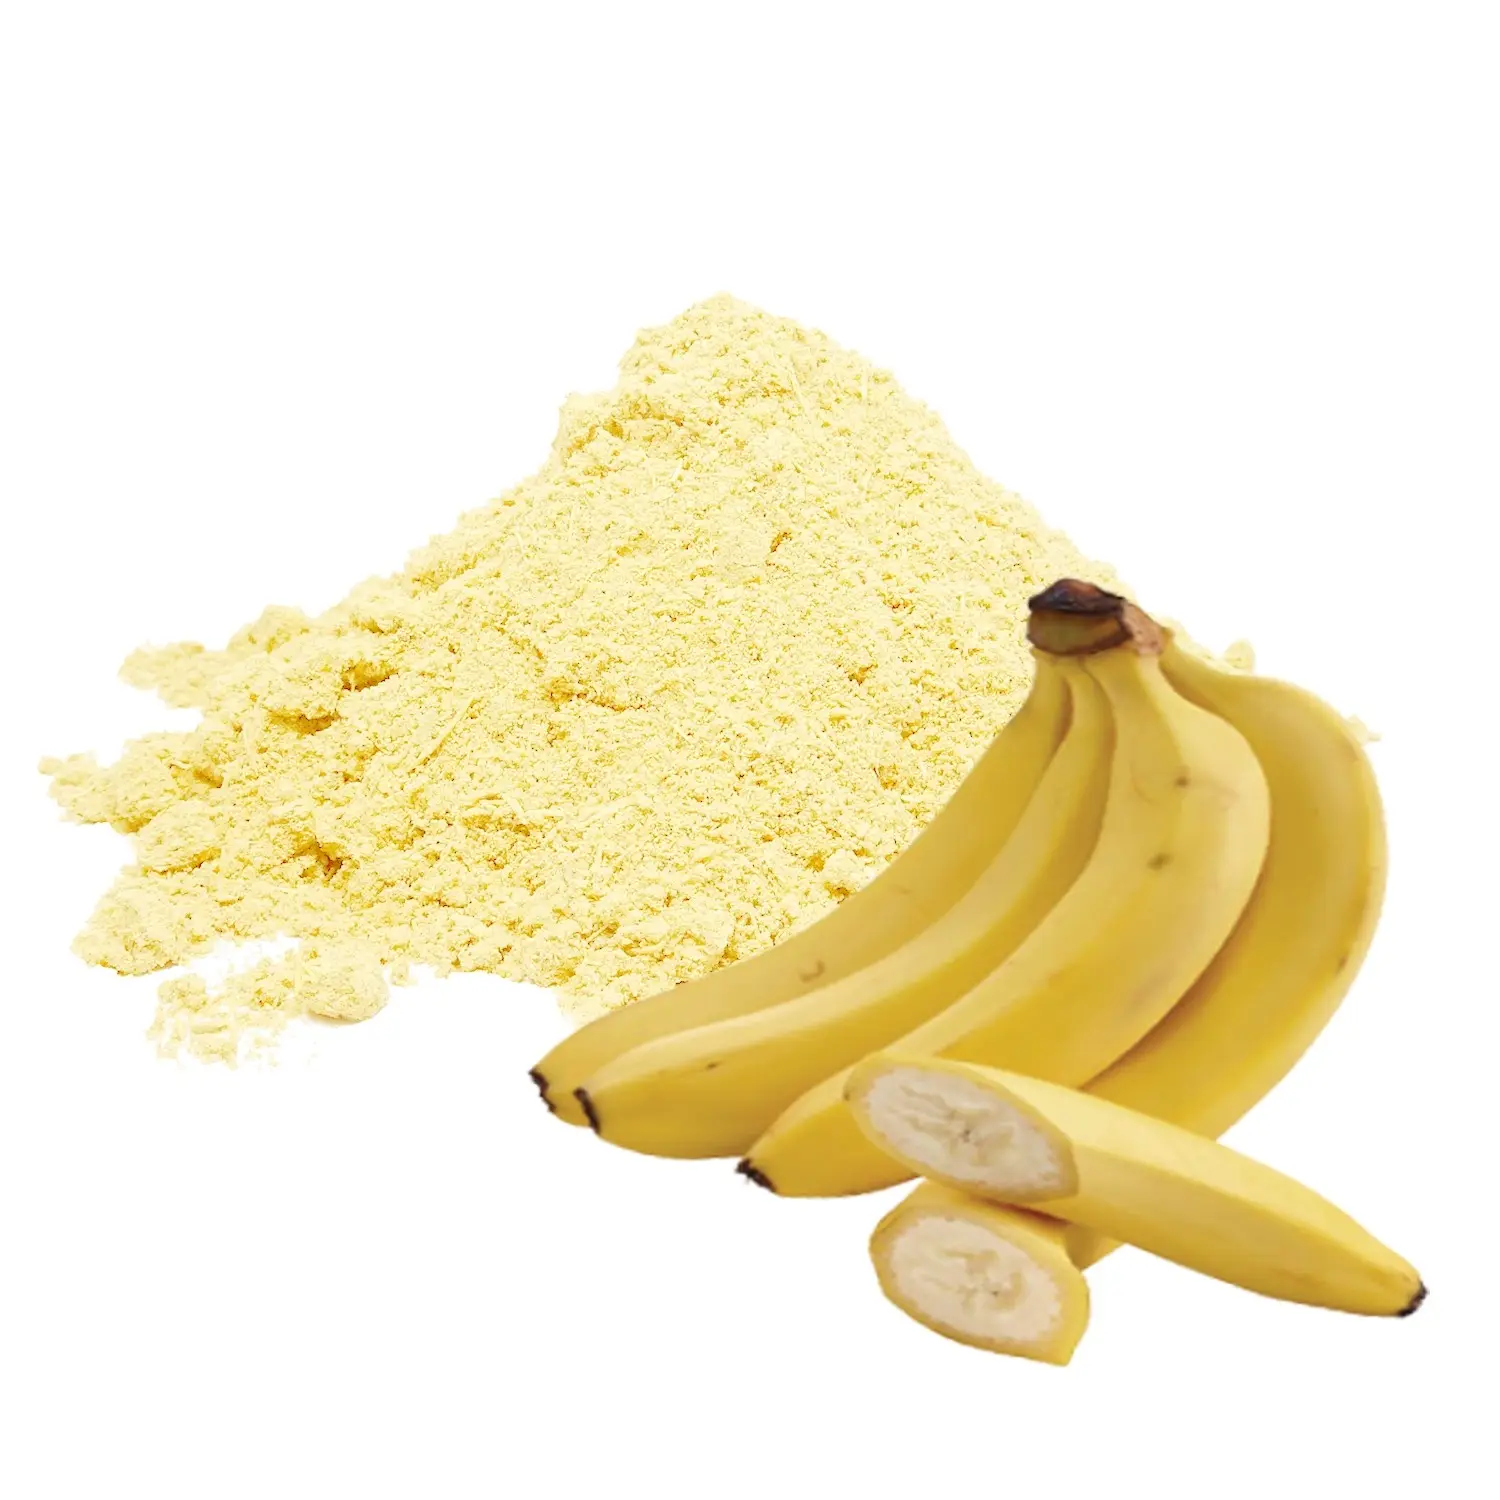 Musa-polvo de plátano que puede mejorar los niveles de azúcar en la sangre, también mejora la sensibilidad a la glucosa cuando no está listo